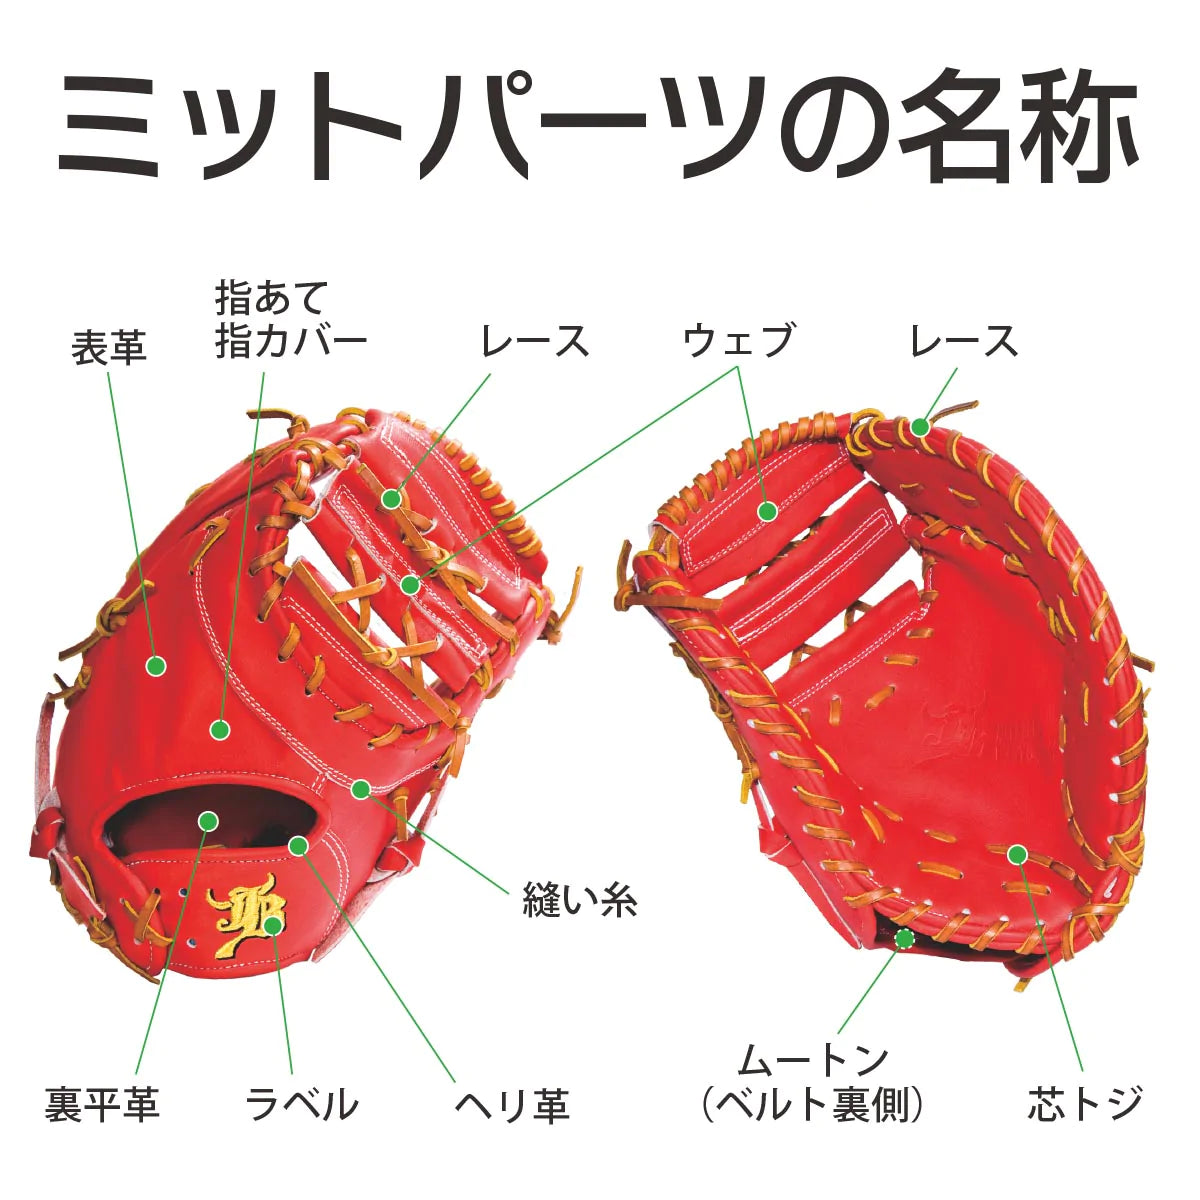 【オーダー】【一塁手】硬式和牛JBオーダーミット JB-003 - ボールパークドットコム